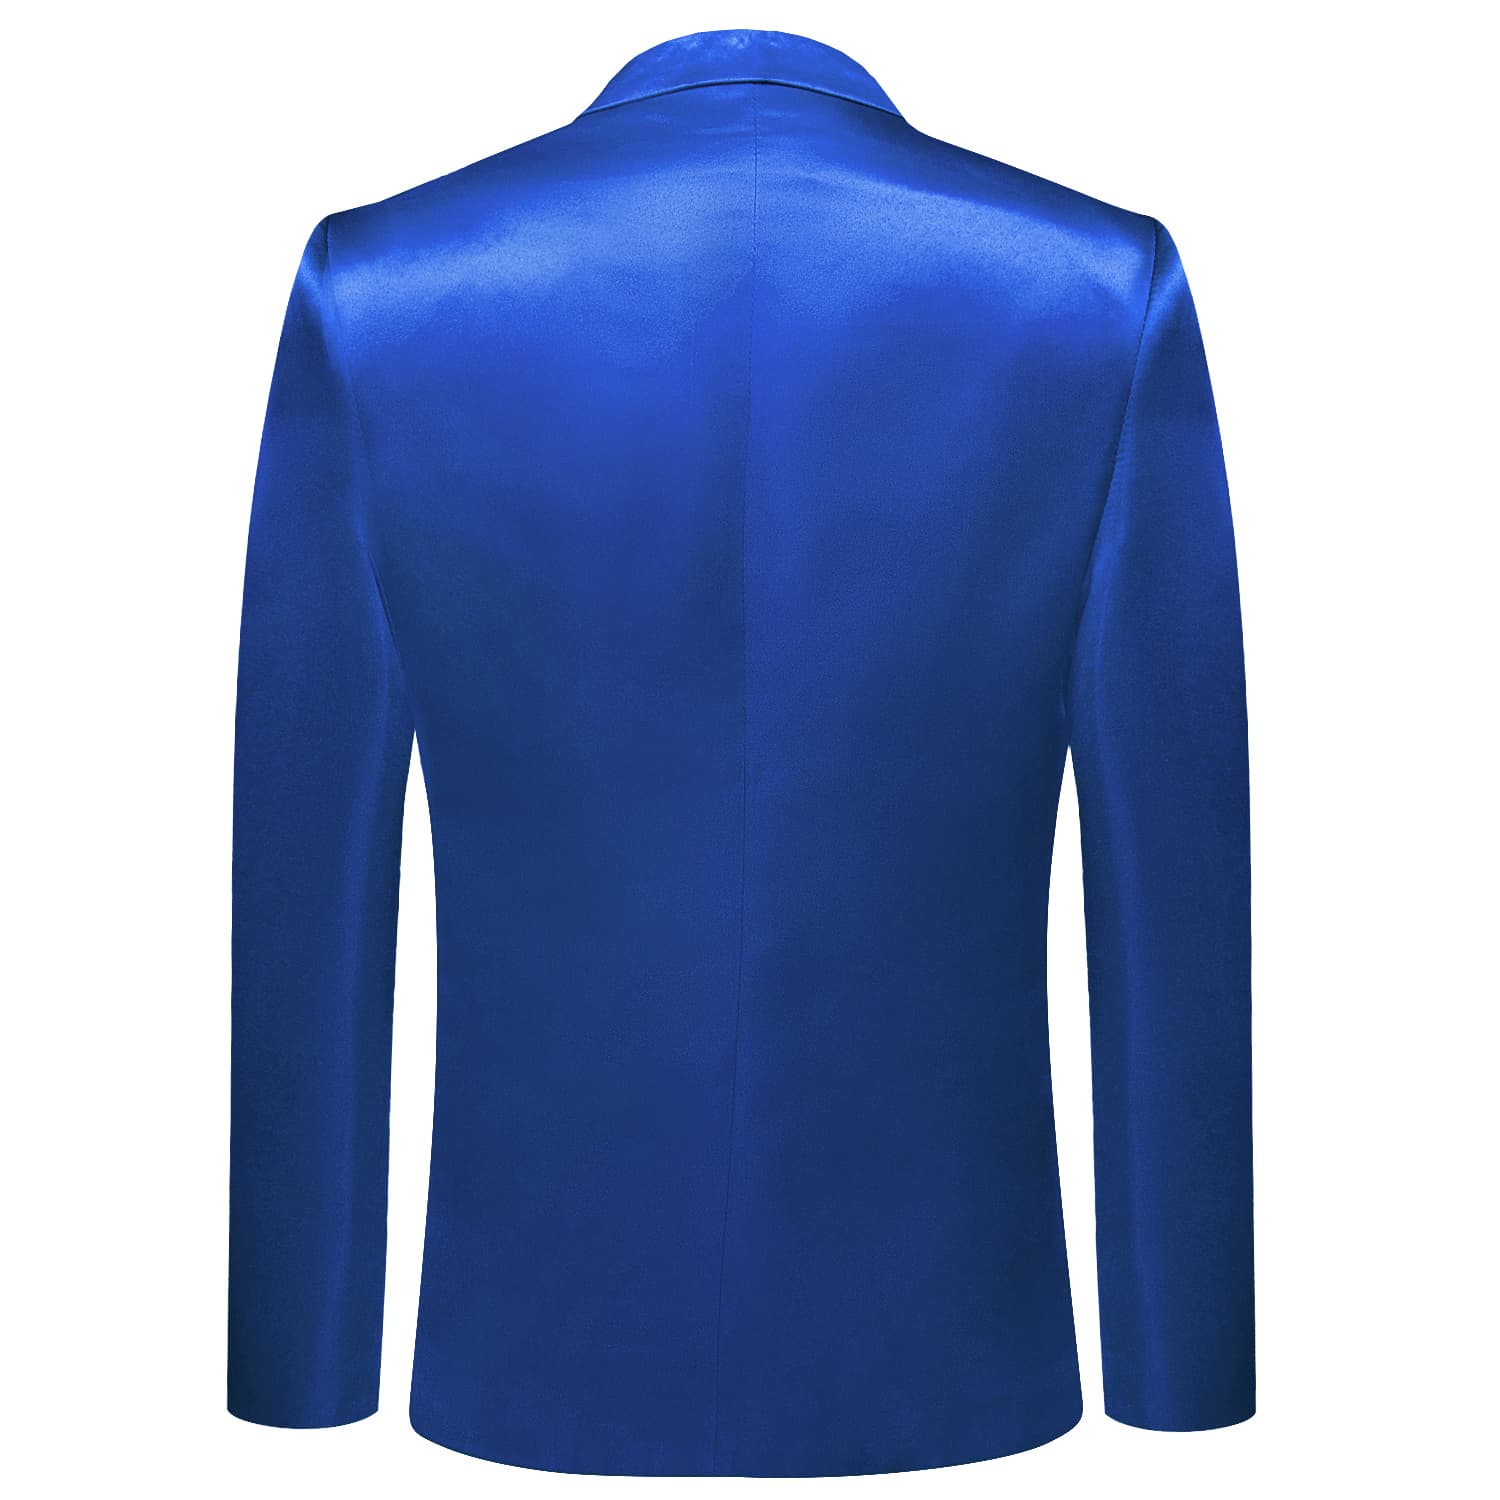 Hi-Tie Blazer Medium Blue Party Solid Top Men Suit